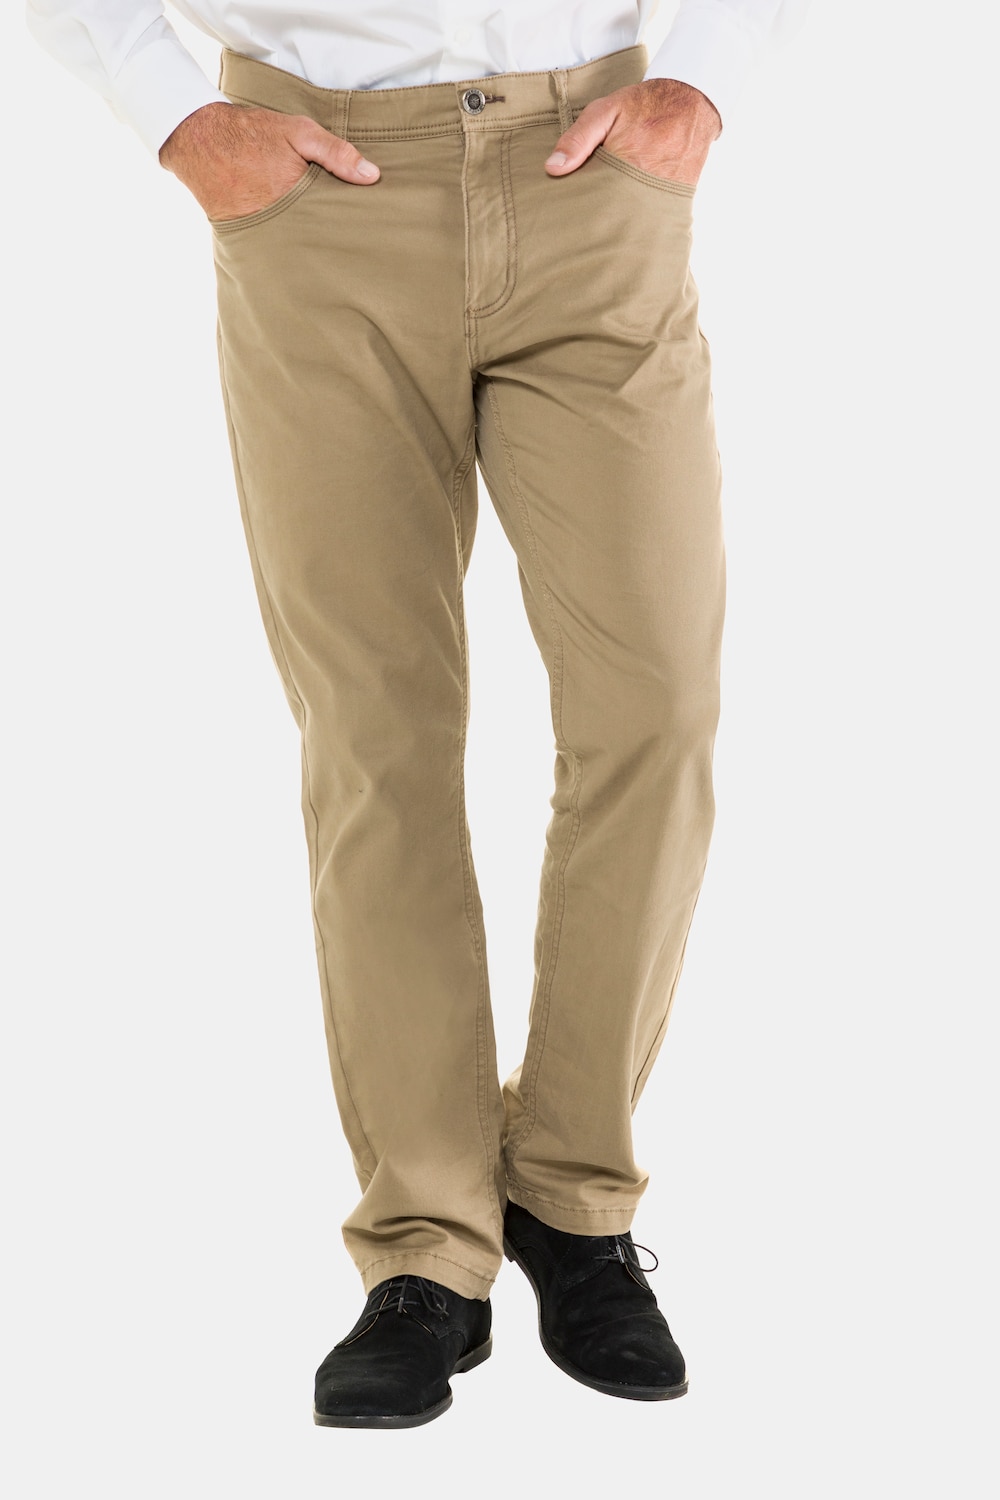 Große Größen 5-Pocket Hose, Herren, braun, Größe: 54, Baumwolle, JP1880